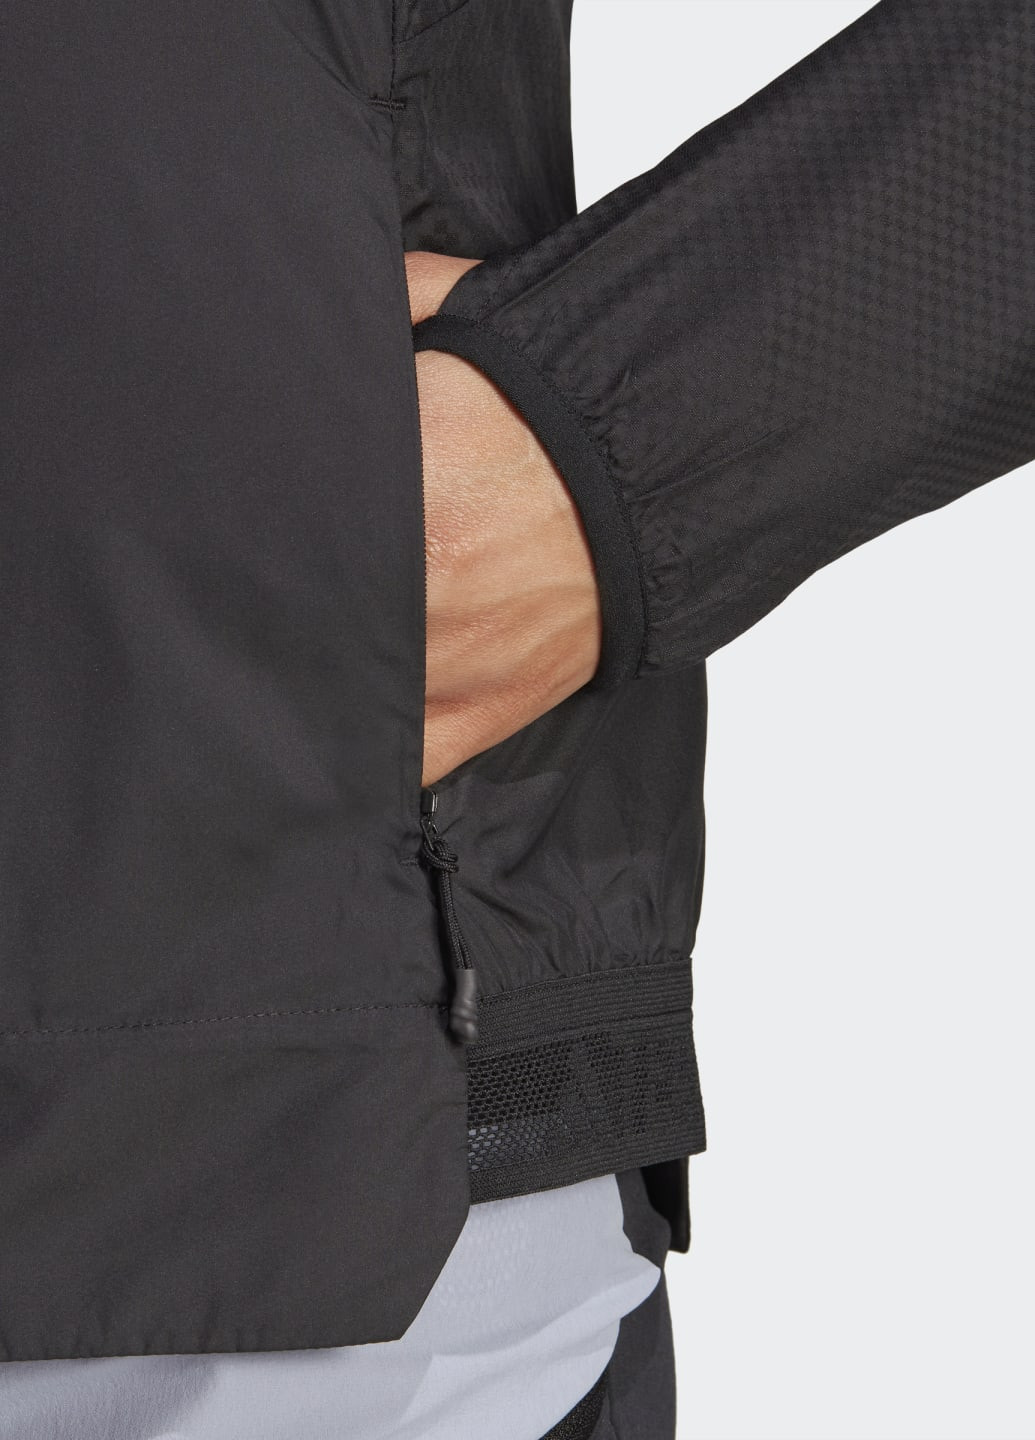 Черная демисезонная куртка terrex xperior windweav adidas